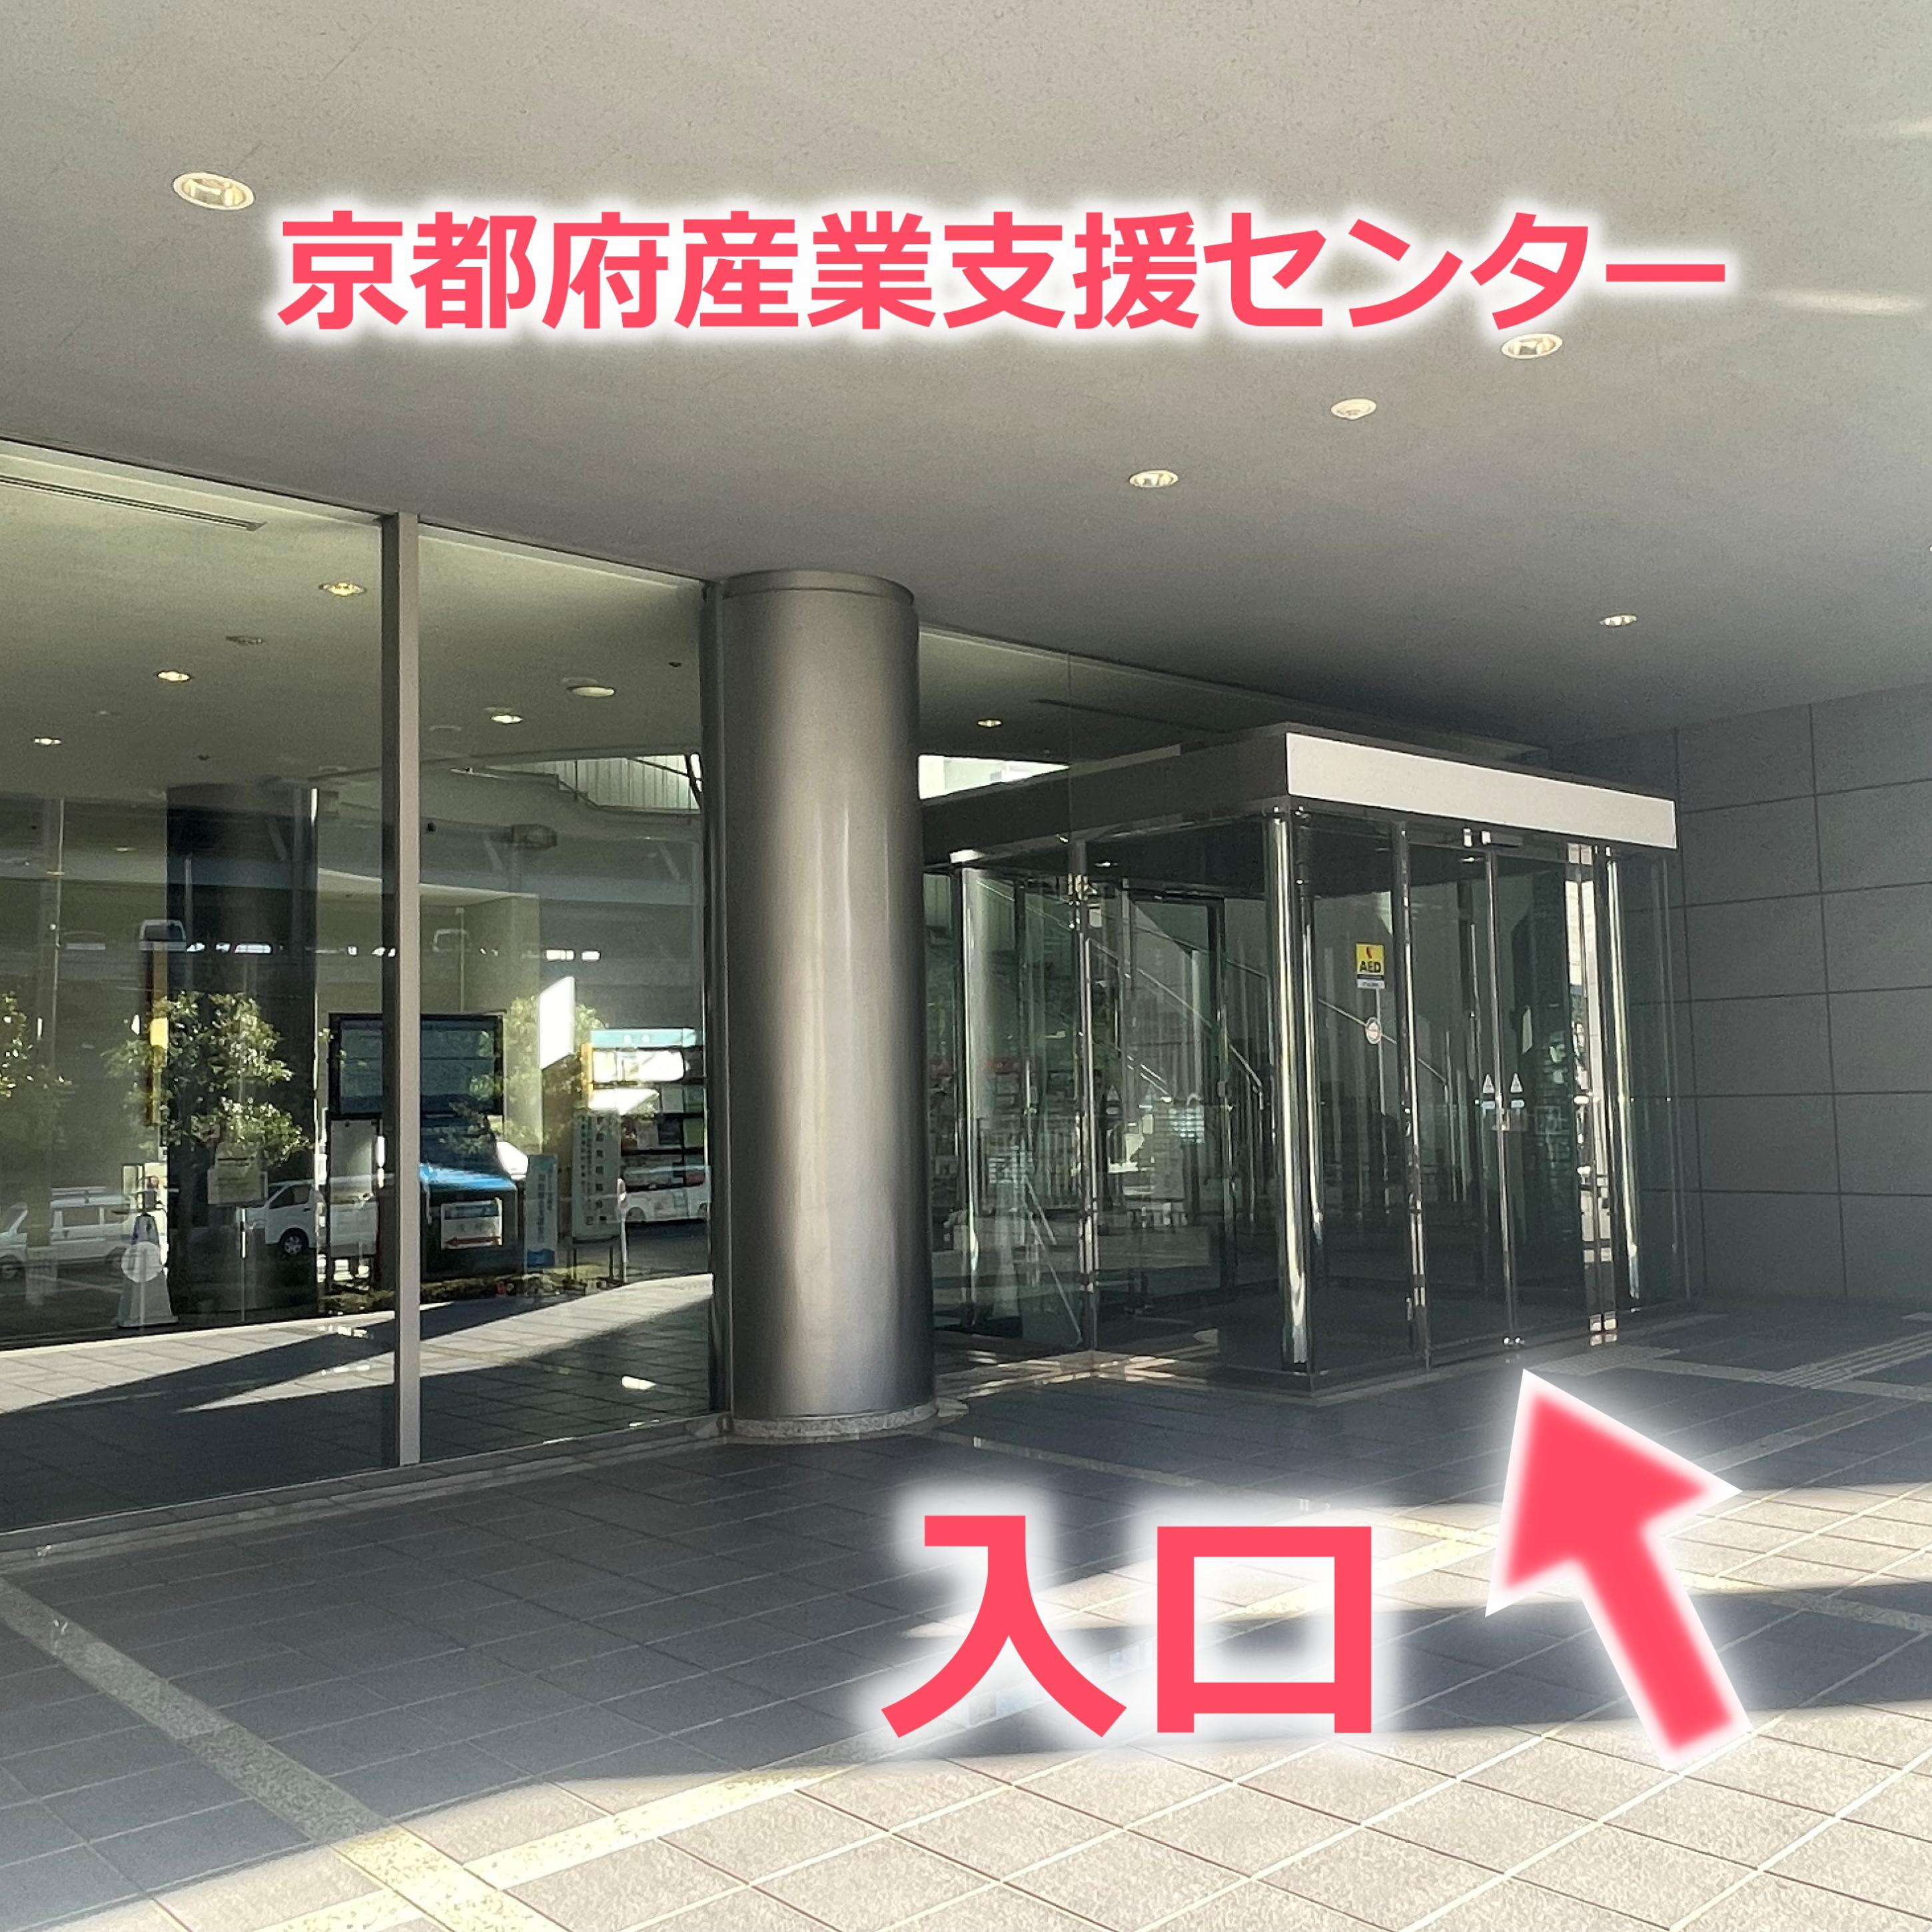 京都府産業支援センター入口